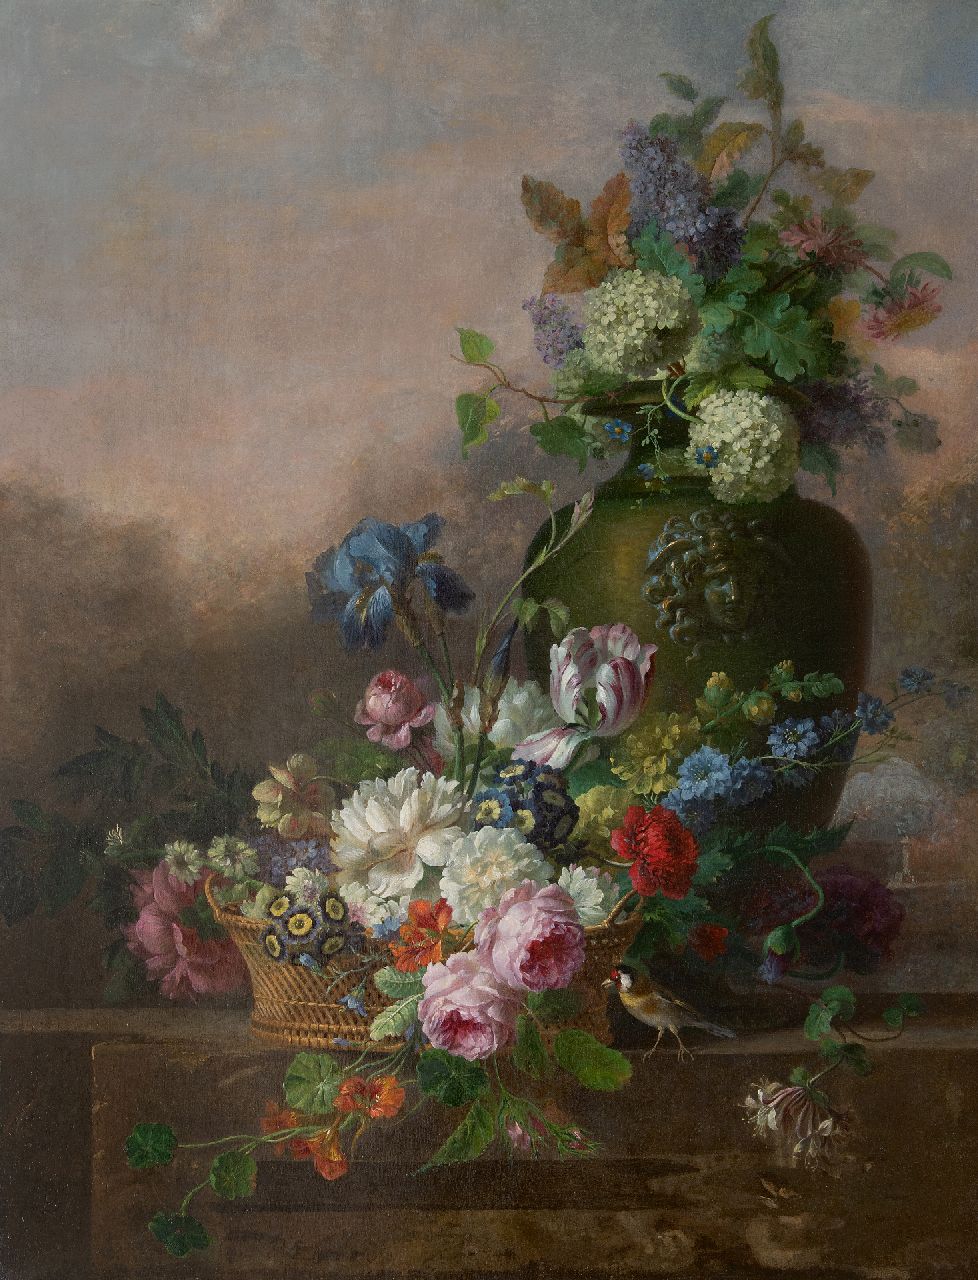 Leen W. van | Willem van Leen, Bloemstilleven met rozen, tulp, iris en andere bloemen, olieverf op doek 116,2 x 90,8 cm, gesigneerd met resten van signatuur